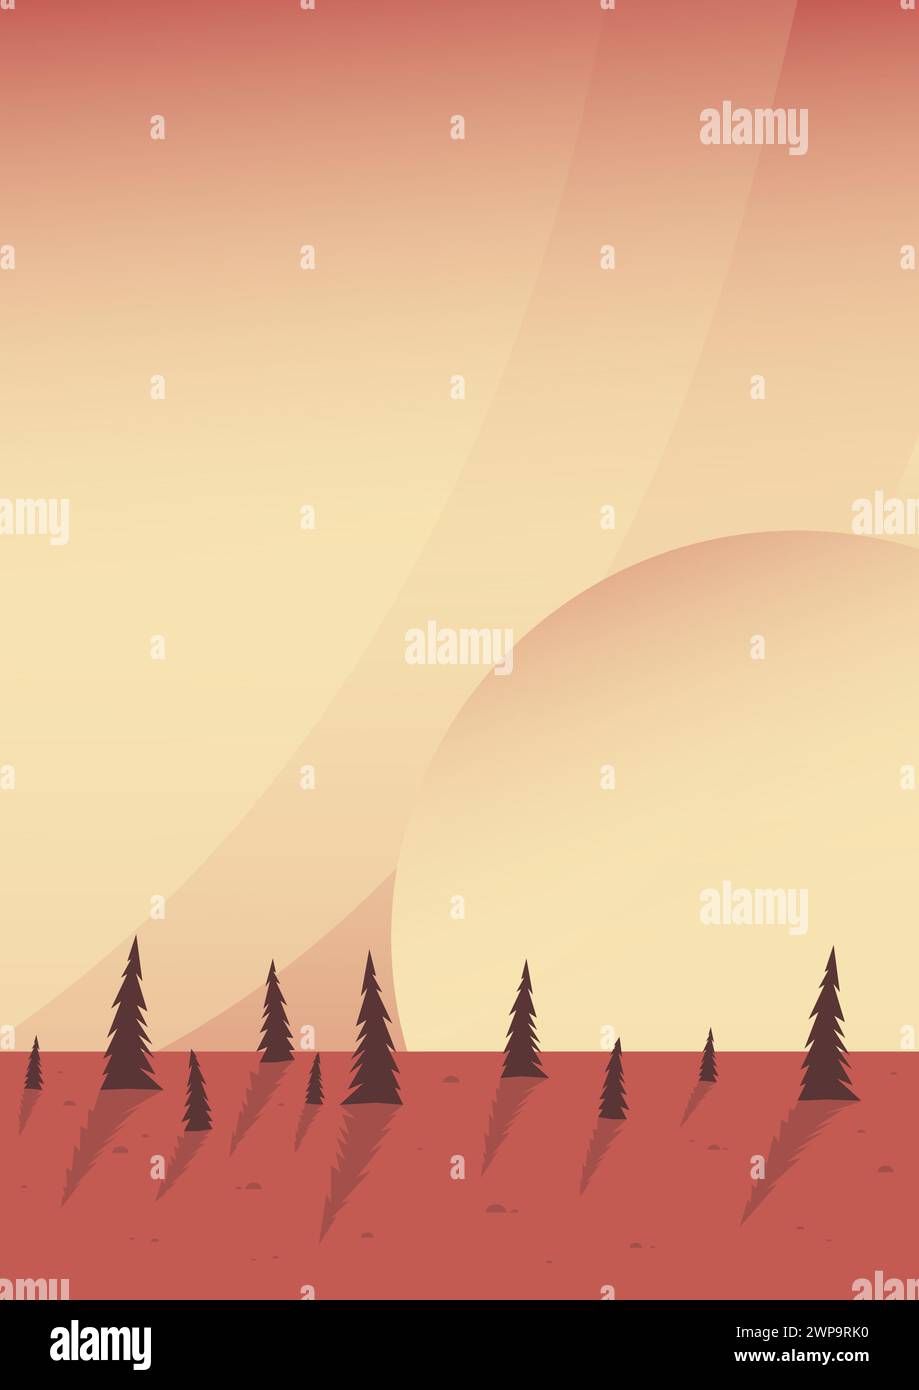 Poster mit Illustration der braunen Tallandschaft. Sonnenuntergang in der National Yellowstone Park Art. Moderner Boho-Hintergrund mit Sonne und Wald, minimalistische Wandeinrichtung Stock Vektor